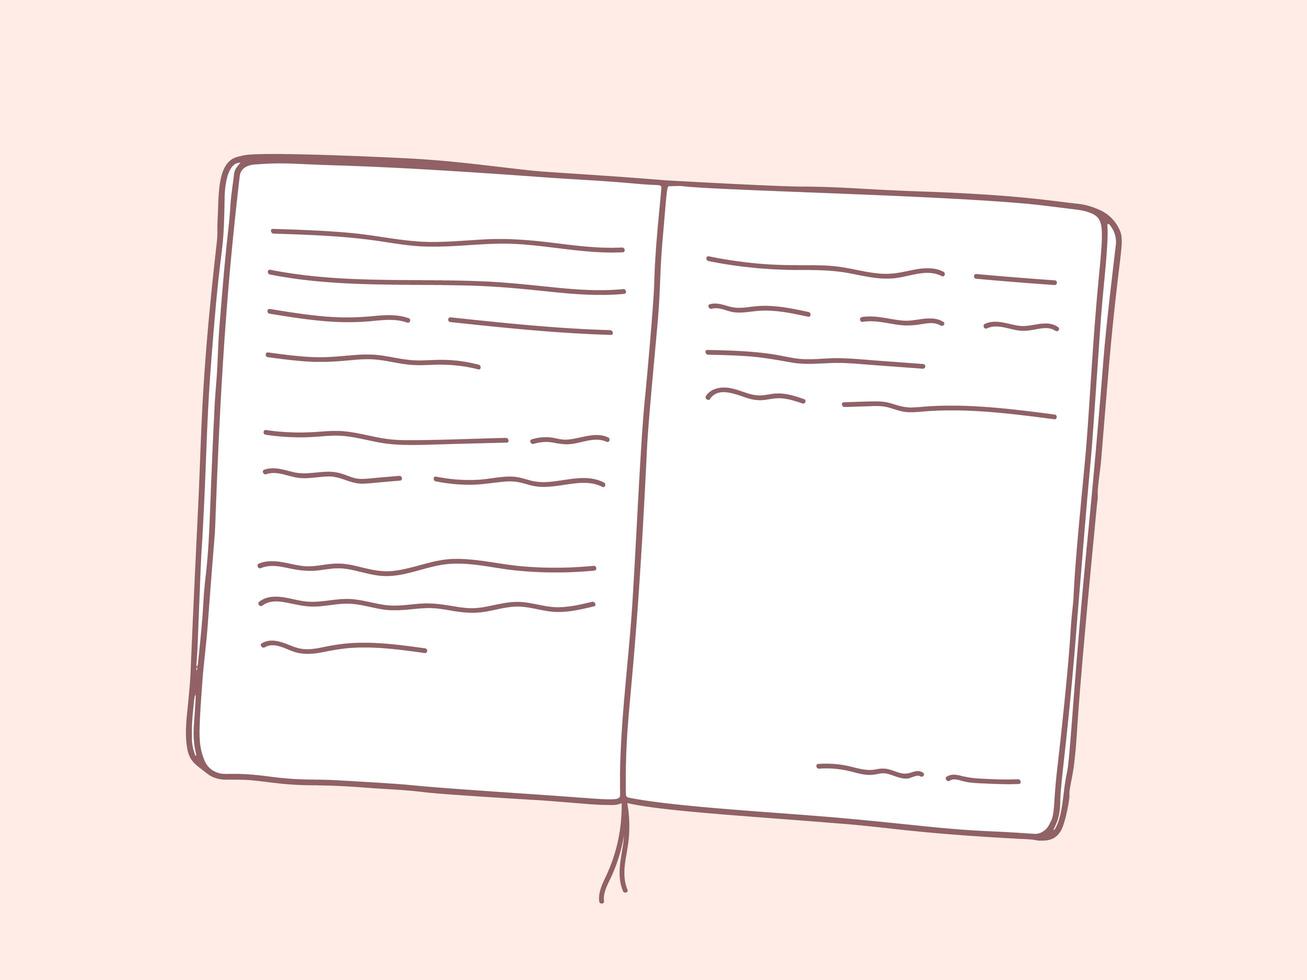 open boek. vector hand getrokken illustratie van open boek met tekst in doodle stijl